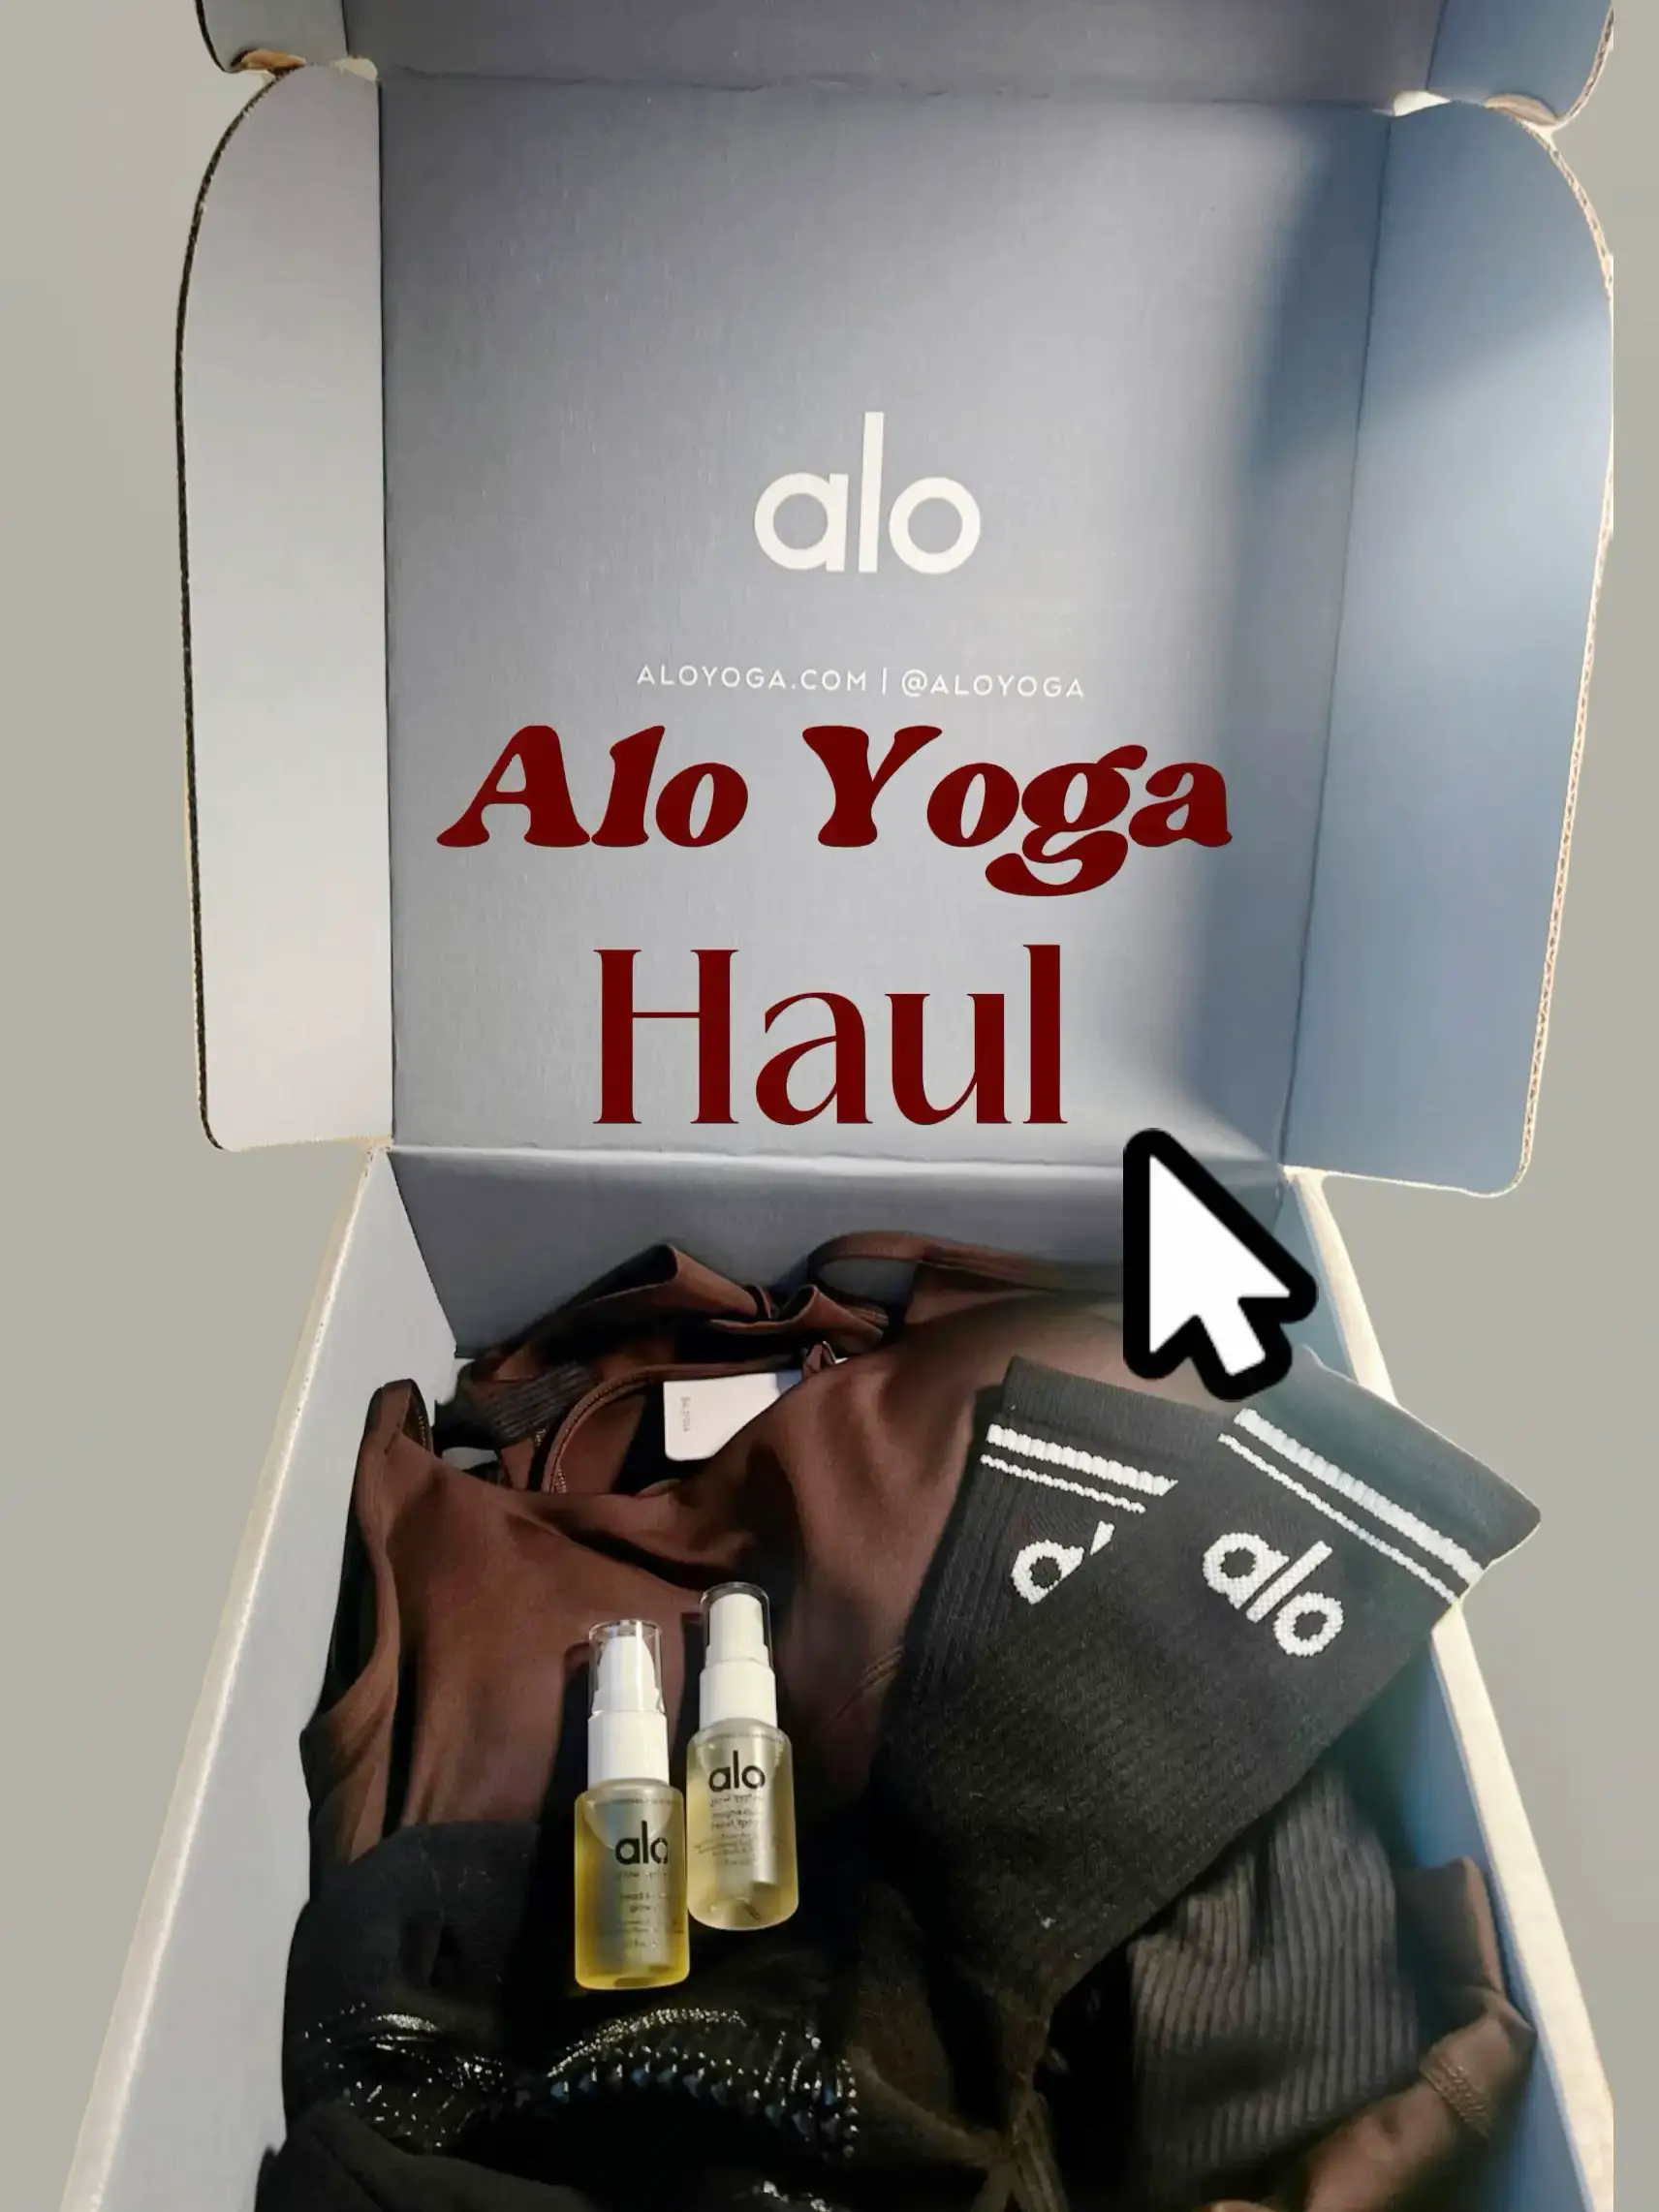 ✨ Alo yoga White sneakers ✨ 😍🔥 #aloyoga #aloyogahaul #unboxing